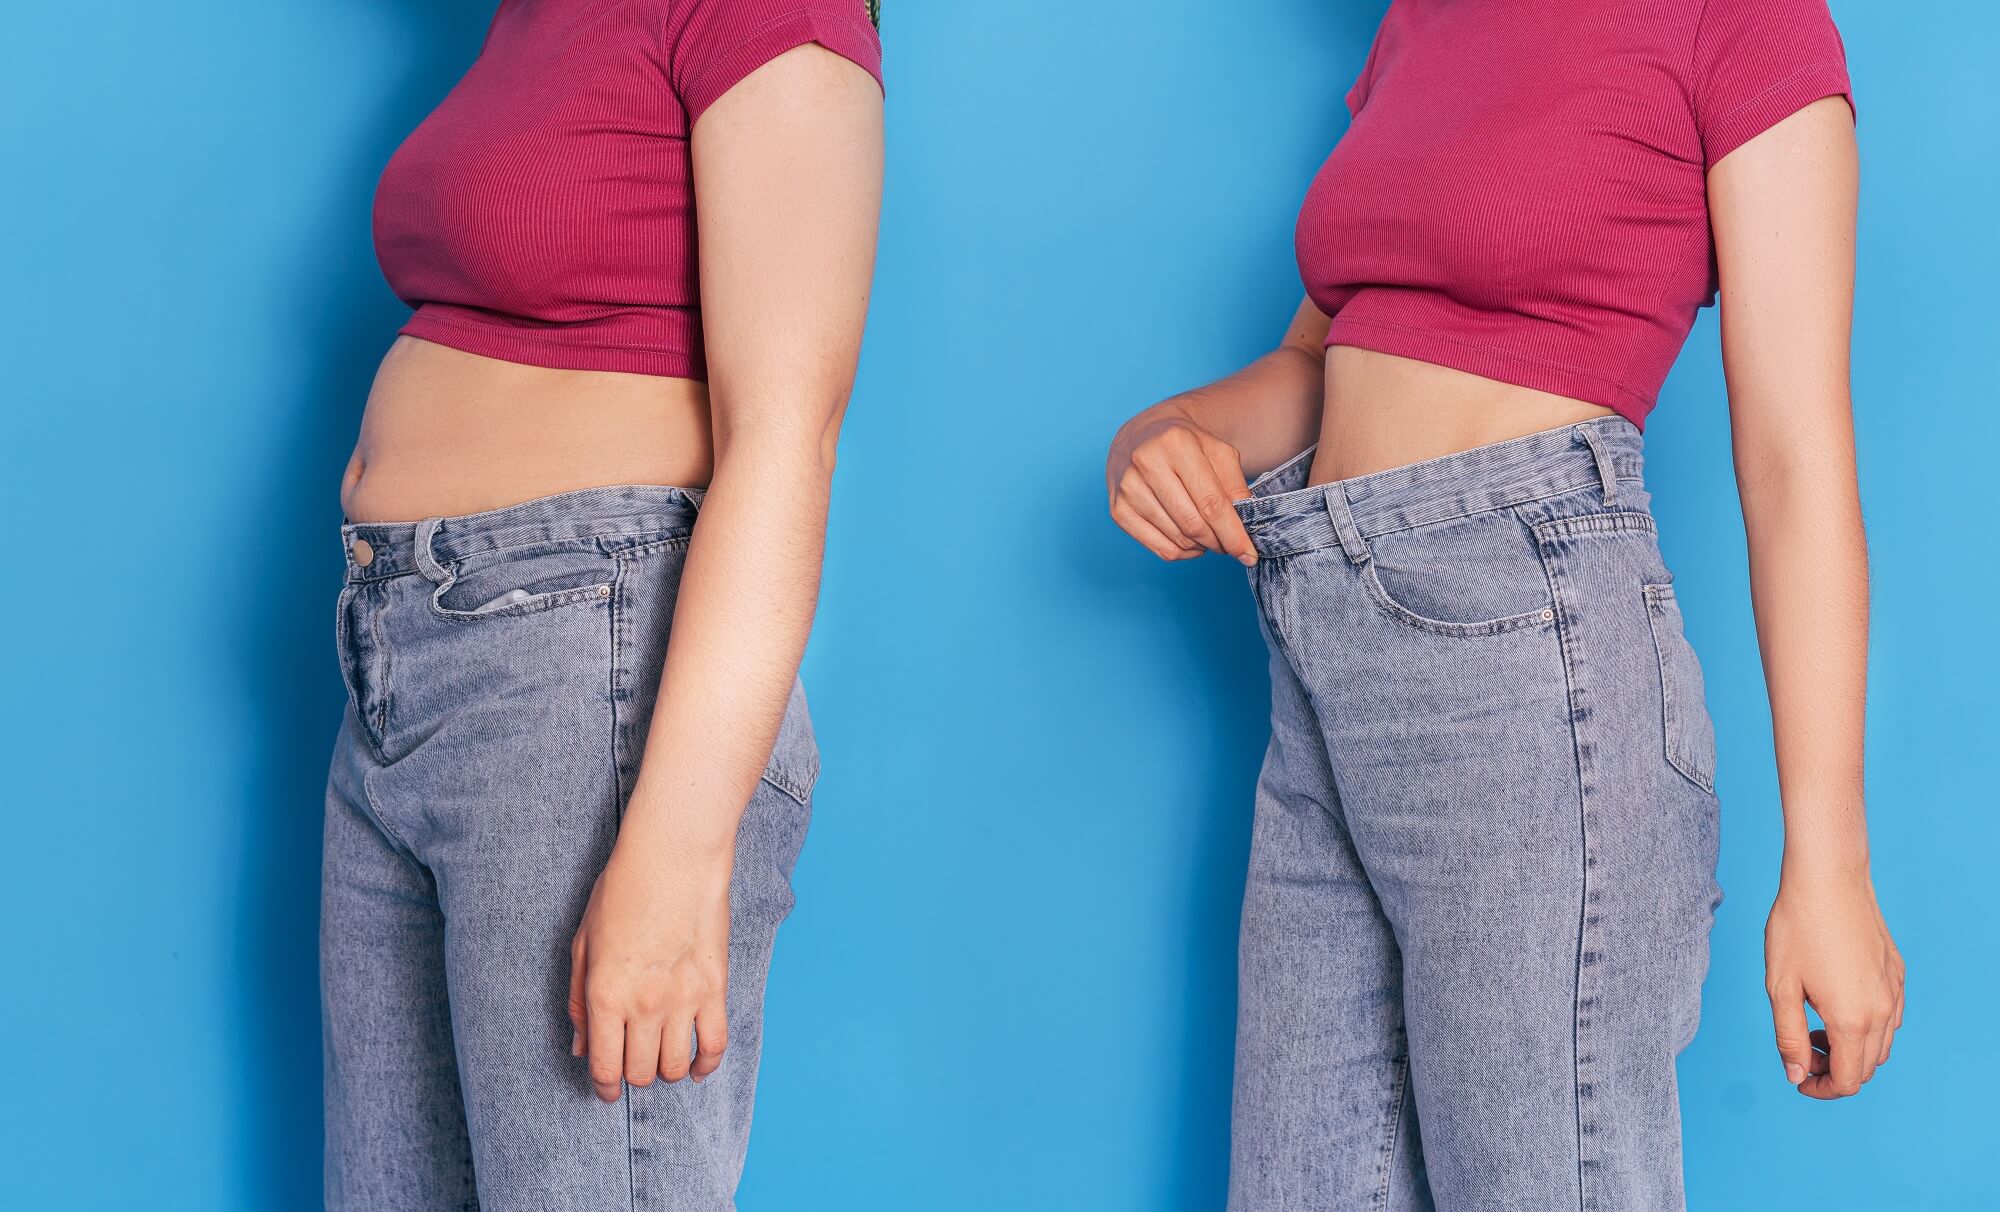 Garota antes e depois de perder peso